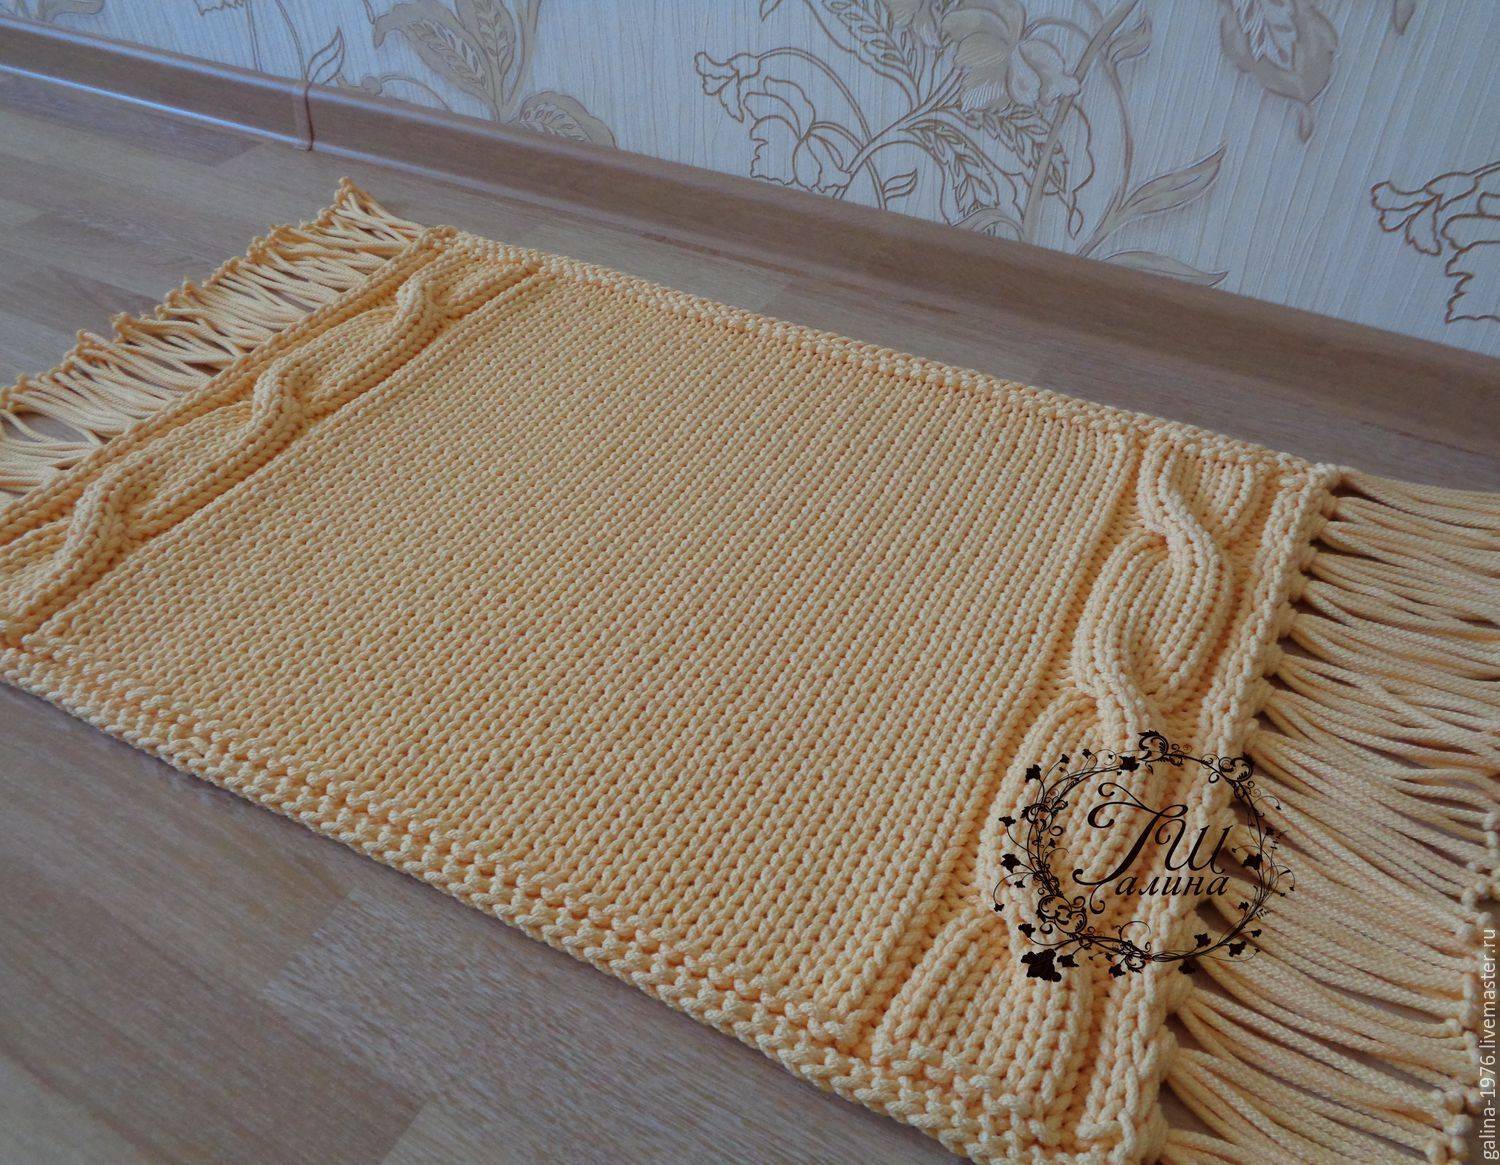 Коврик своими руками (66 фото) - пошаговые мастер-классы по созданию ковриков из старых вещей